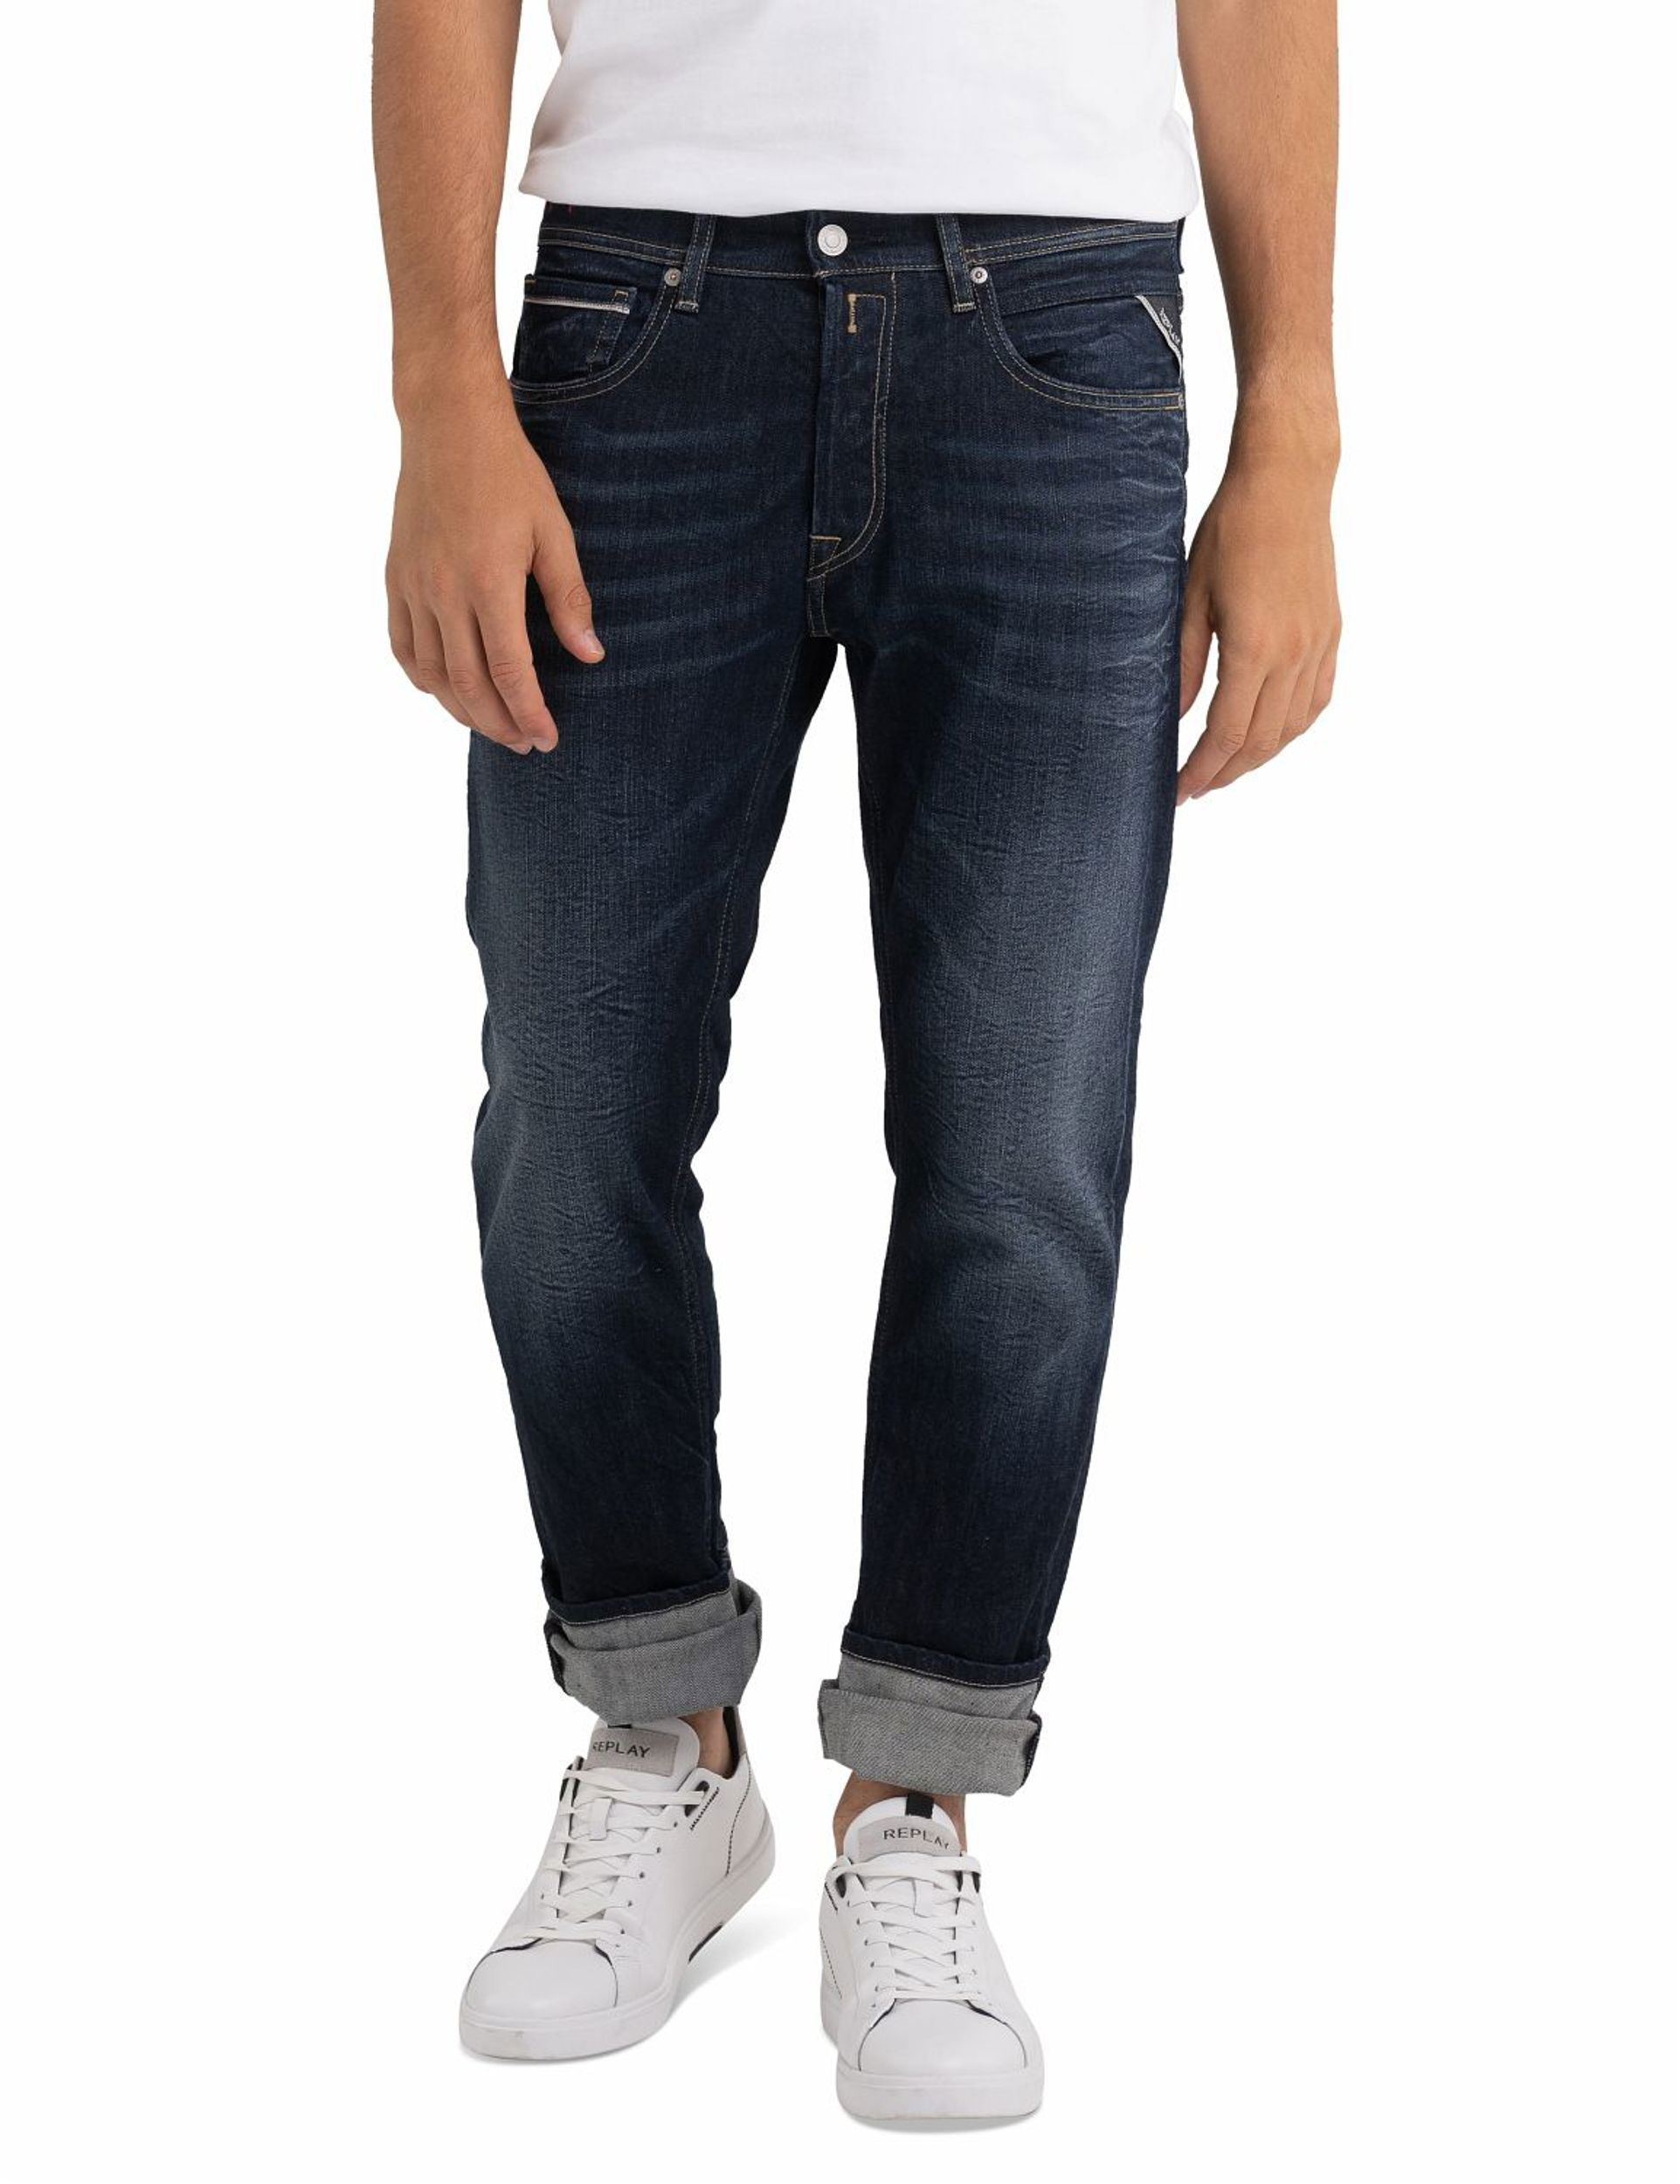 Replay |  Replay Regular Fit Jeans  | 36/32 | dark blue